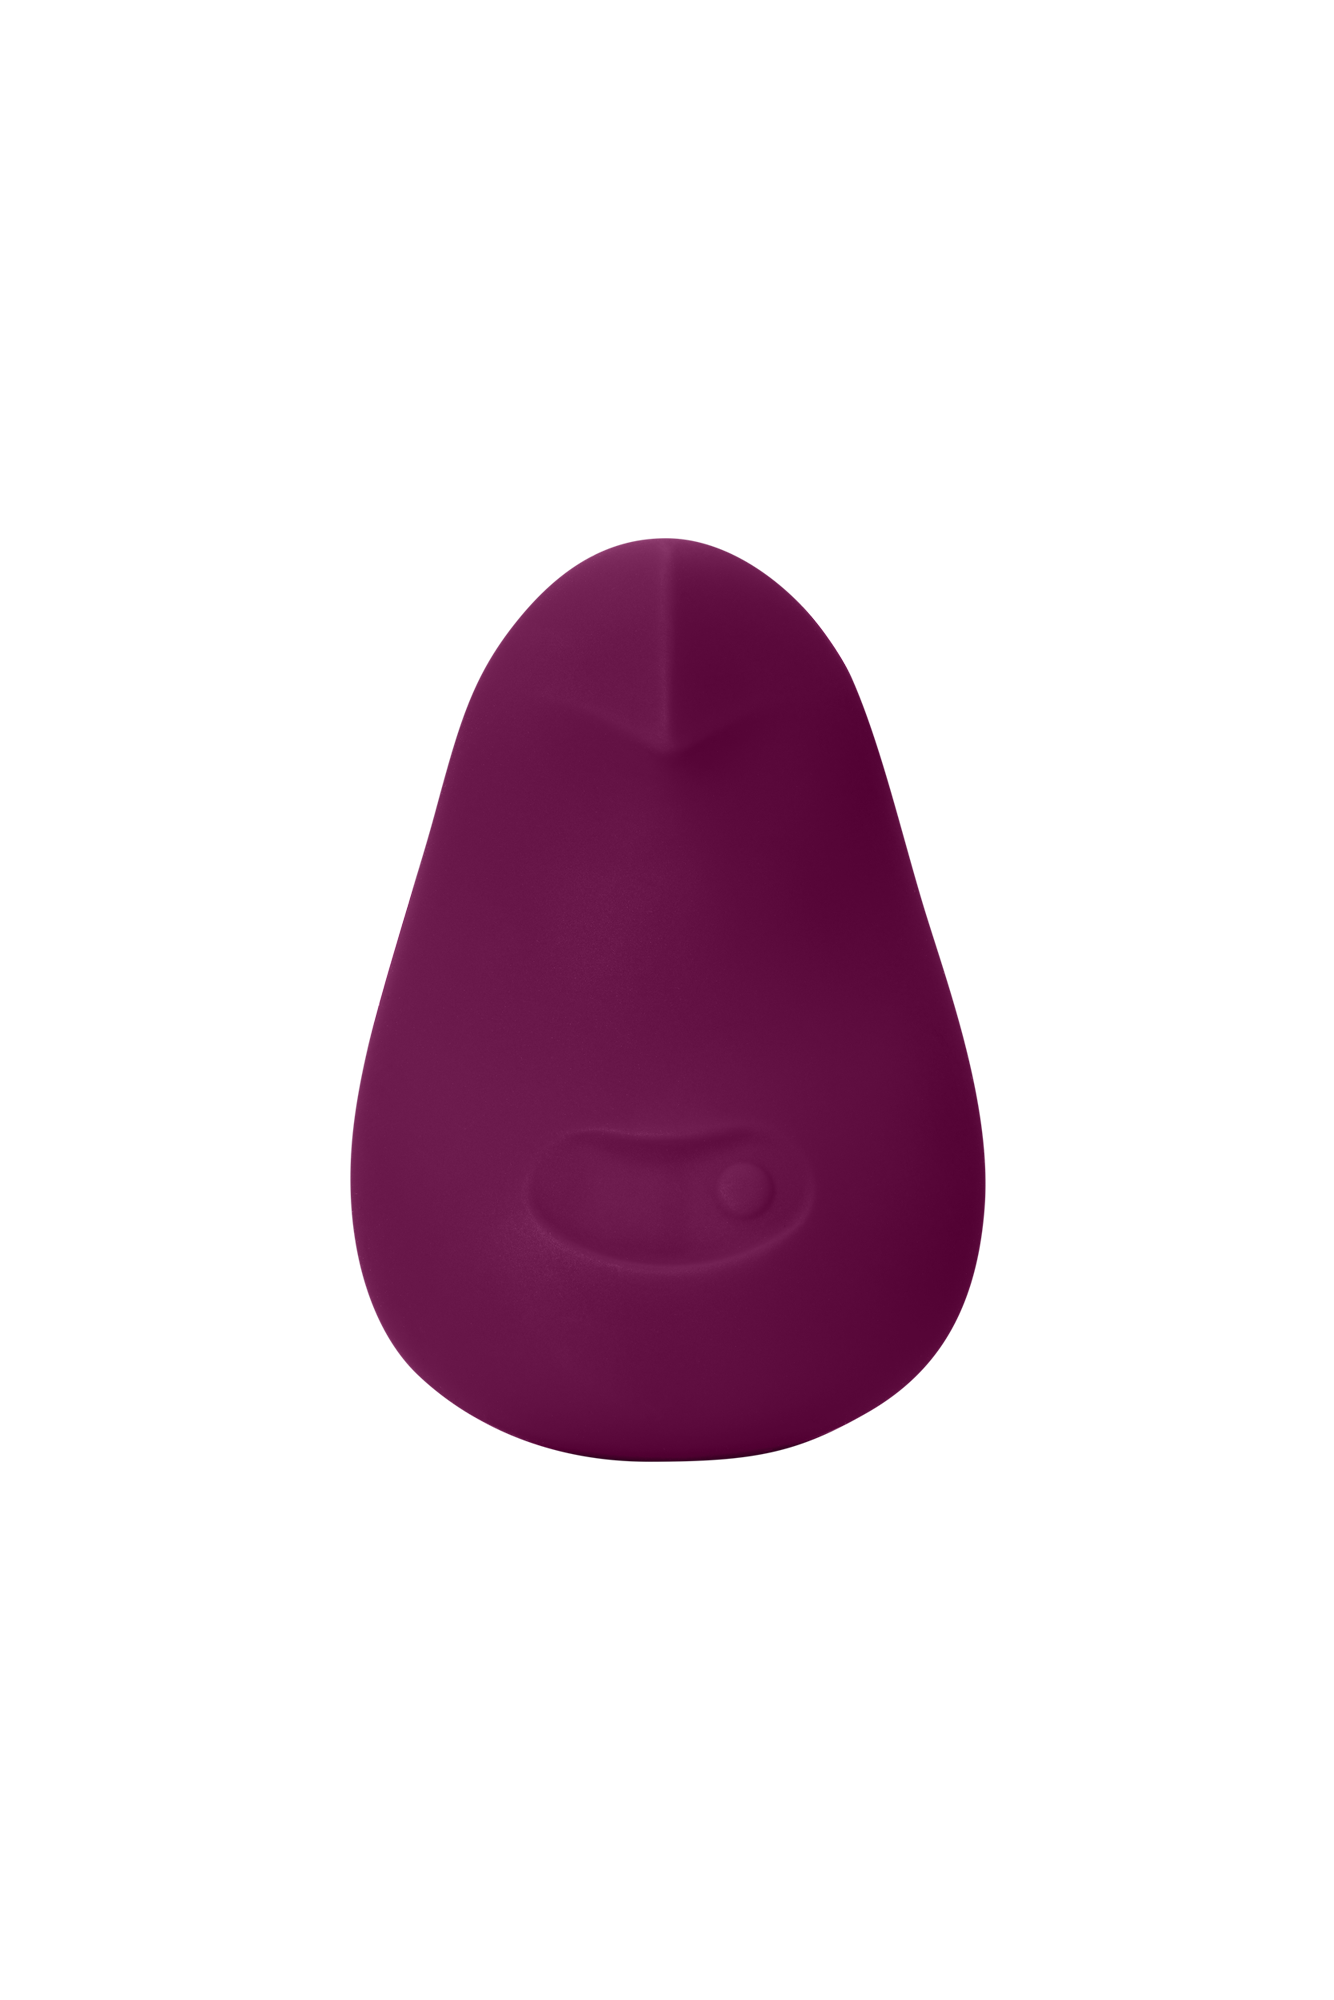 Large Purple Poms, Big Purple Poms